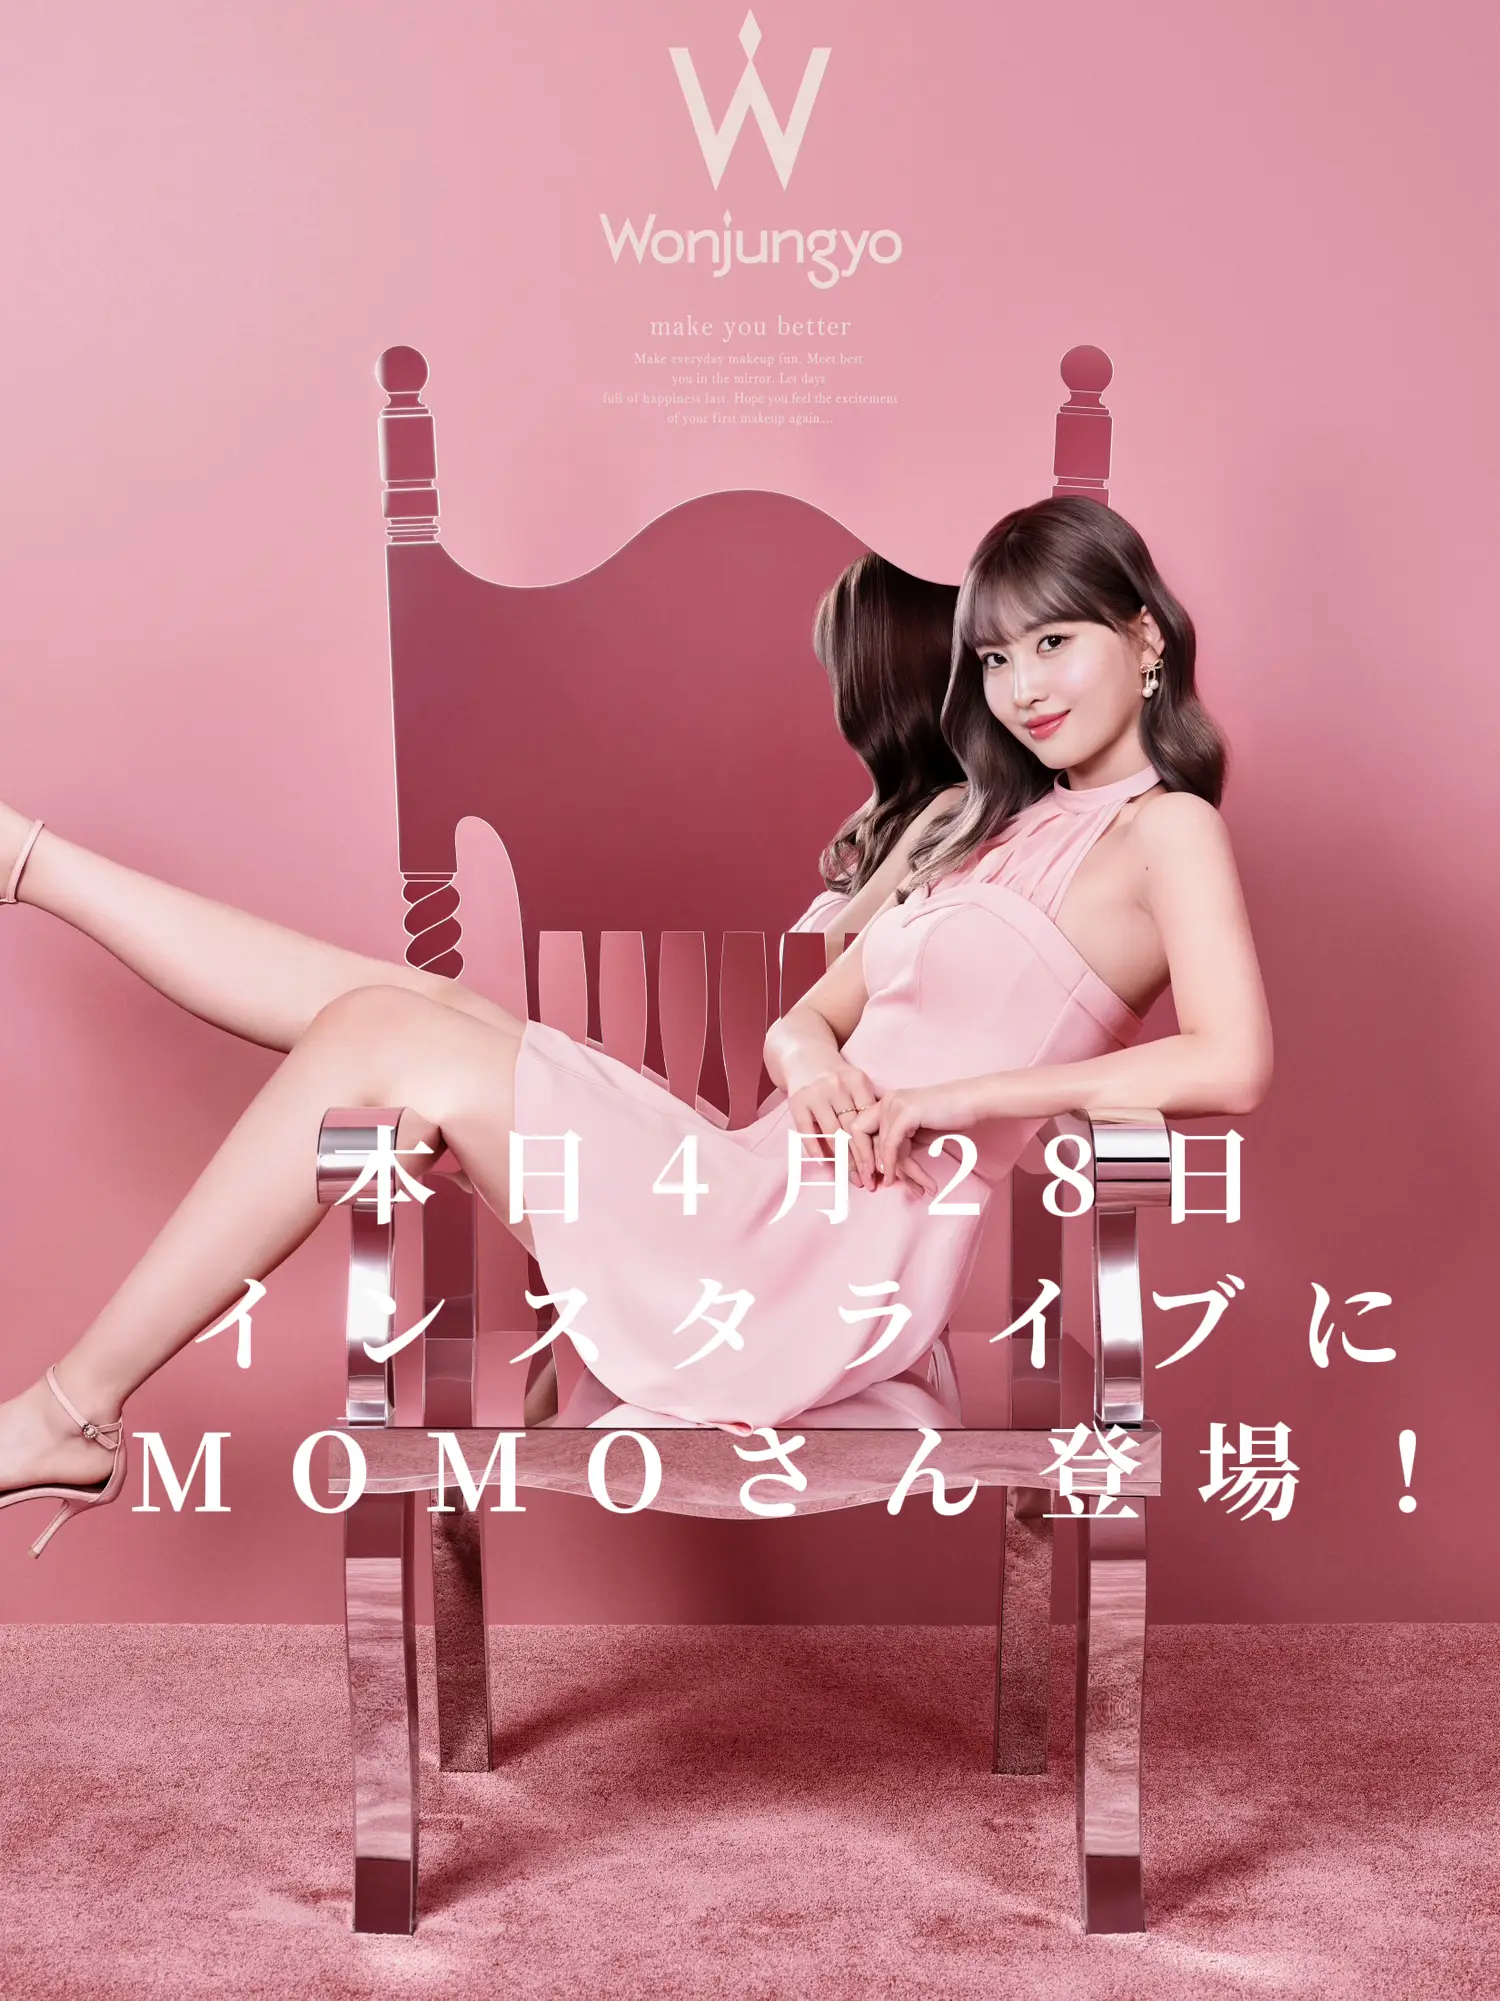 本日4月28日Wonjungyo公式インスタでライブ配信！MOMOさんが出演され